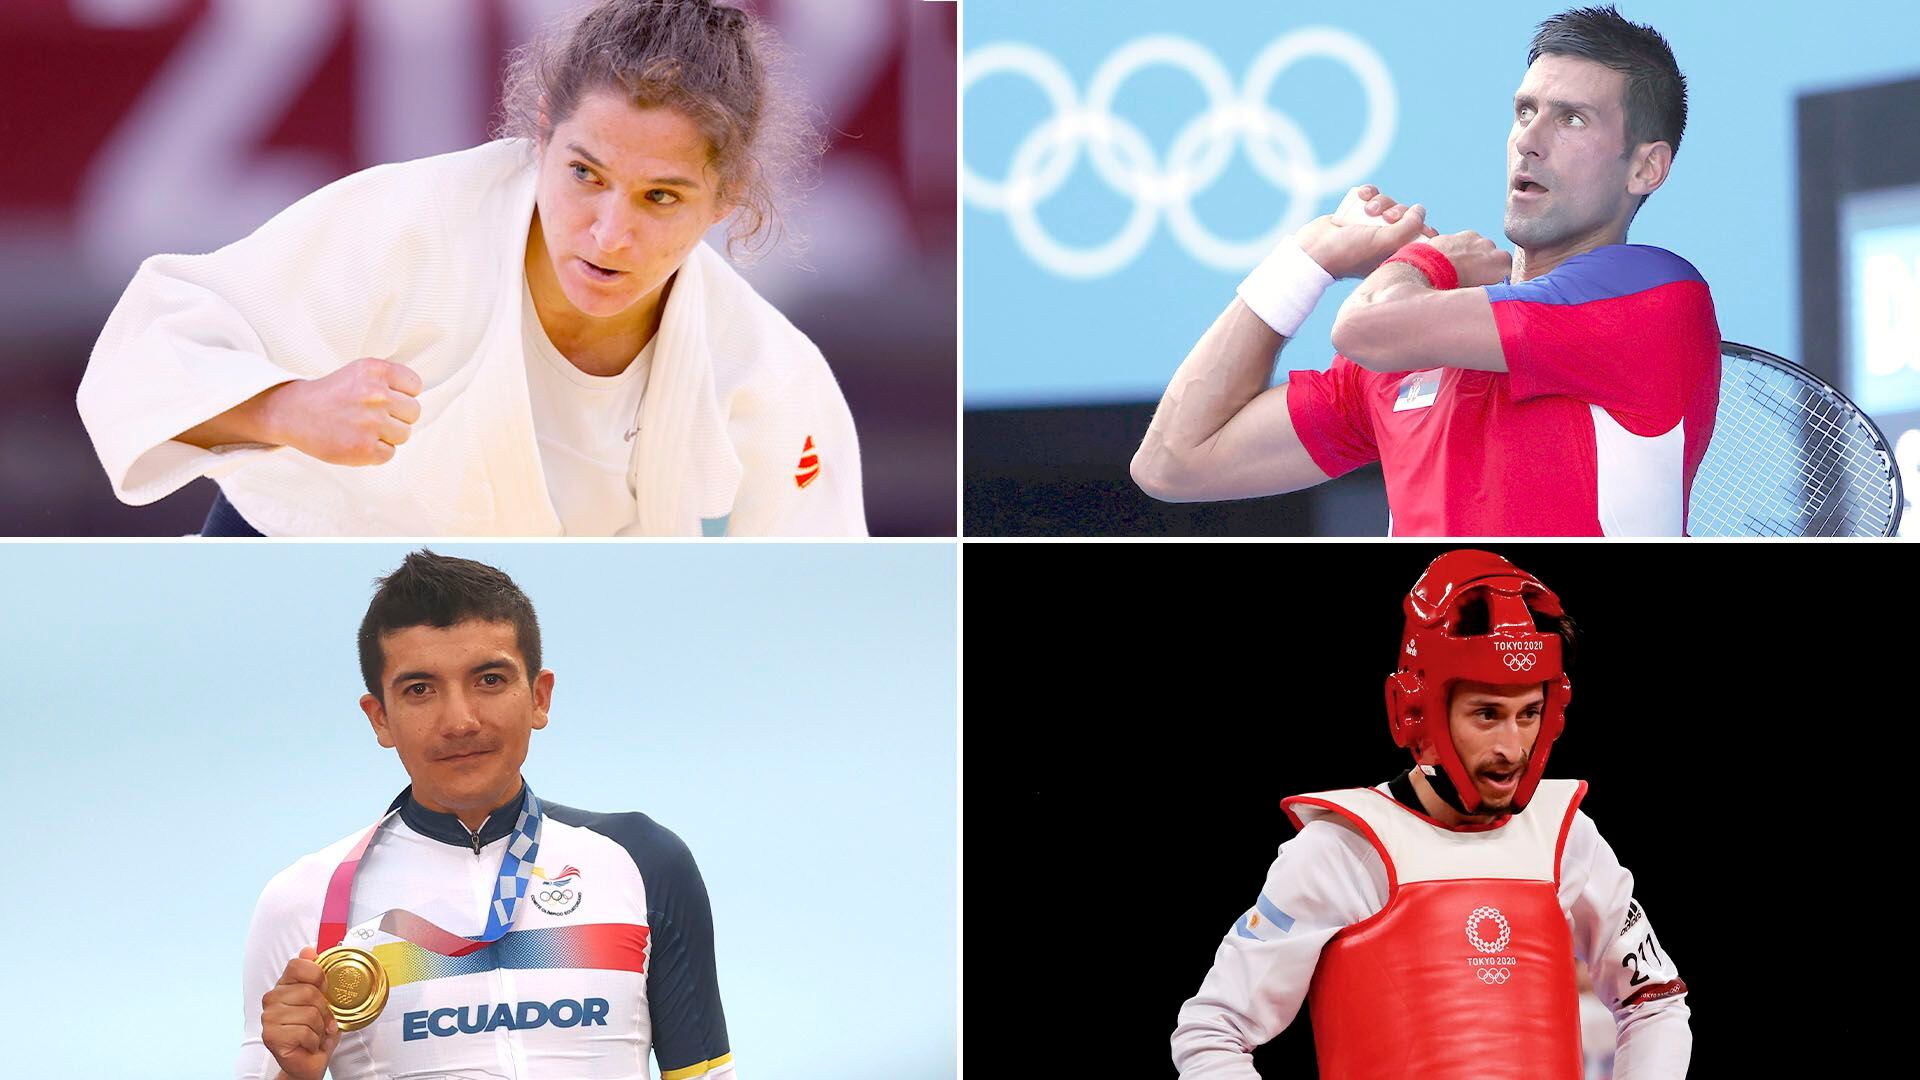 Paula Pareto, Novak Djokovic, Richard Carapaz y Lucas Guzmán, algunos de los deportistas destacados del primer día de acción